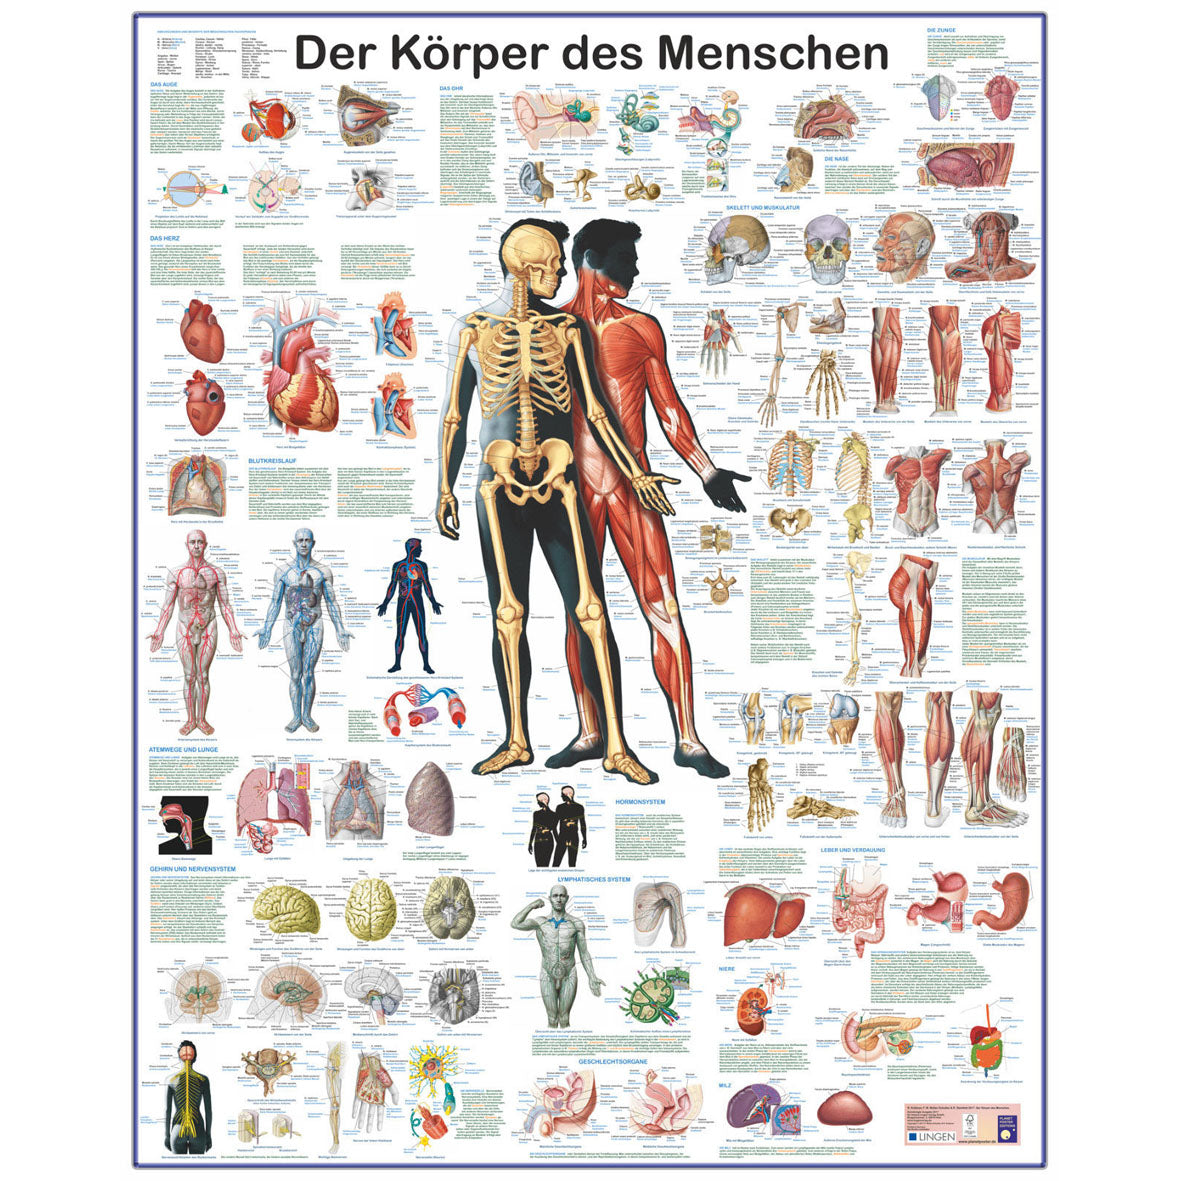 Grossposter "Der Körper des Menschen" - Anatomie und Physiologie auf einen Blick